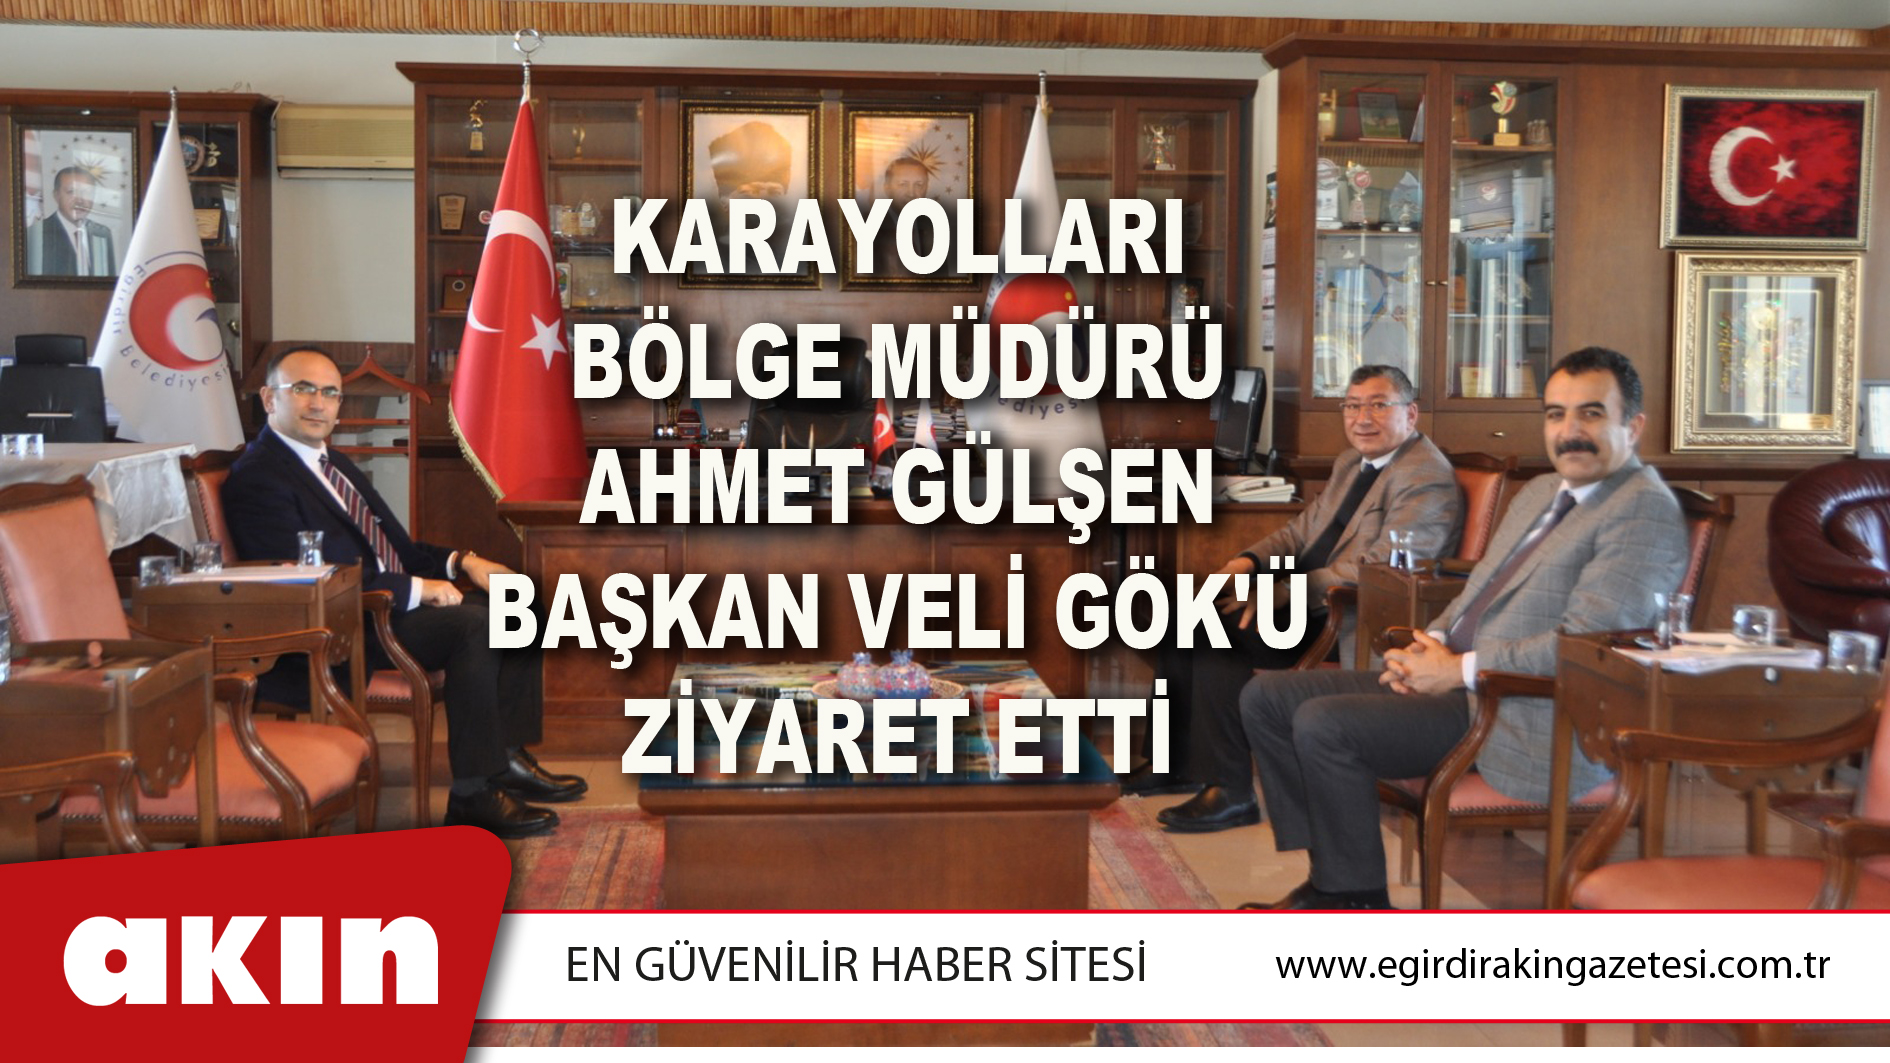 Karayolları Bölge Müdürü Ahmet Gülşen Başkan Veli Gök'ü Ziyaret Etti